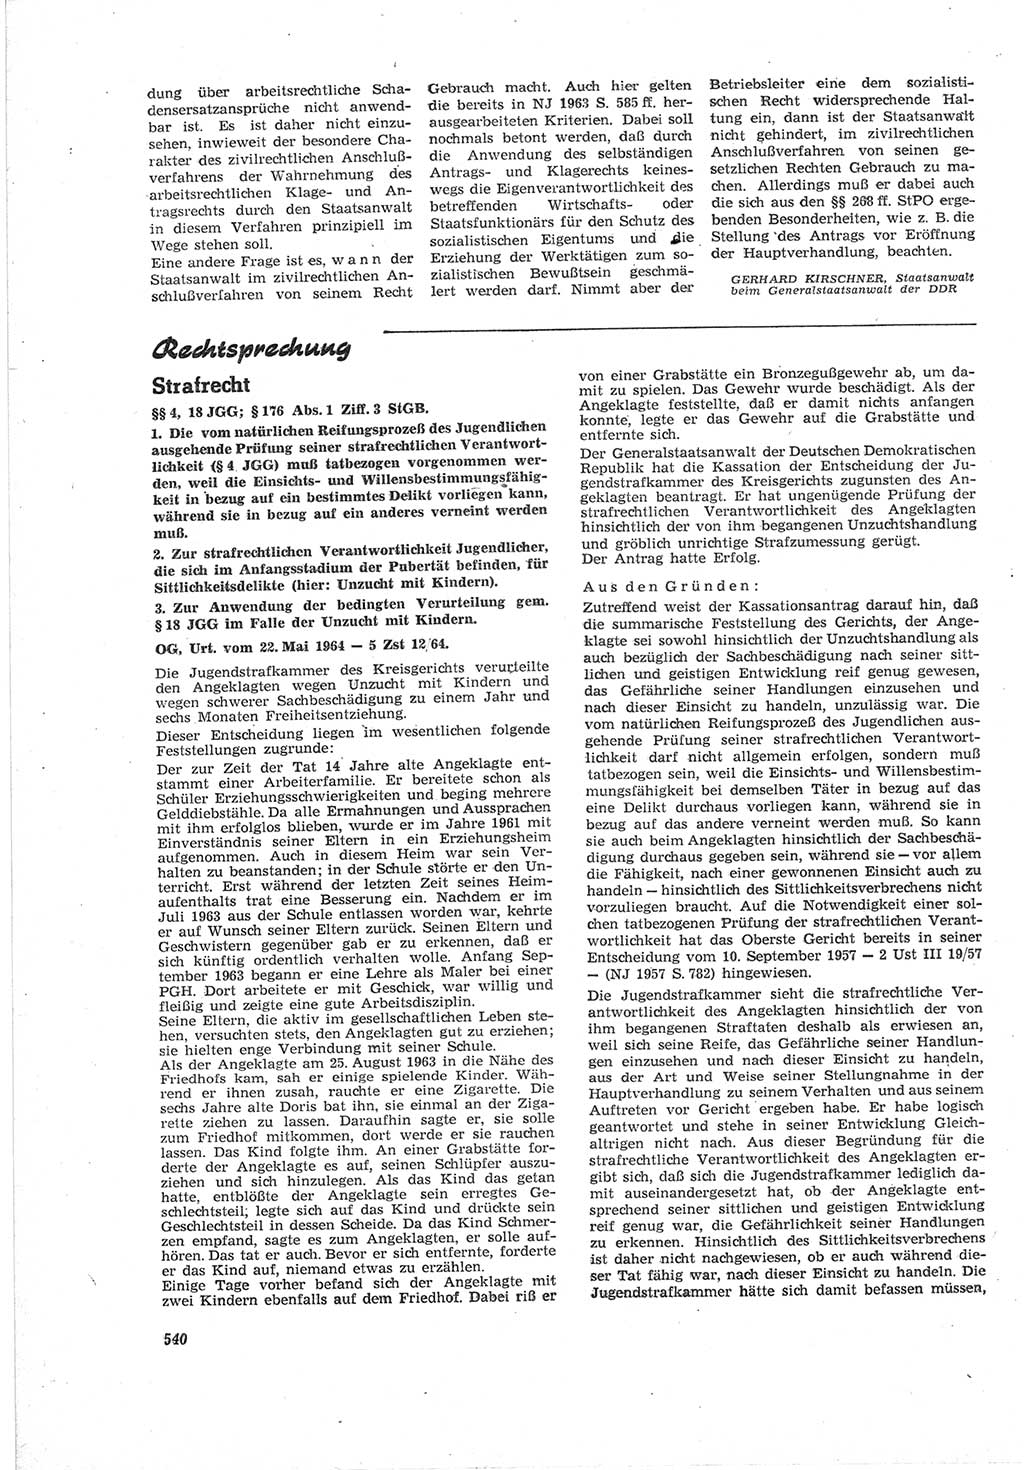 Neue Justiz (NJ), Zeitschrift für Recht und Rechtswissenschaft [Deutsche Demokratische Republik (DDR)], 18. Jahrgang 1964, Seite 540 (NJ DDR 1964, S. 540)